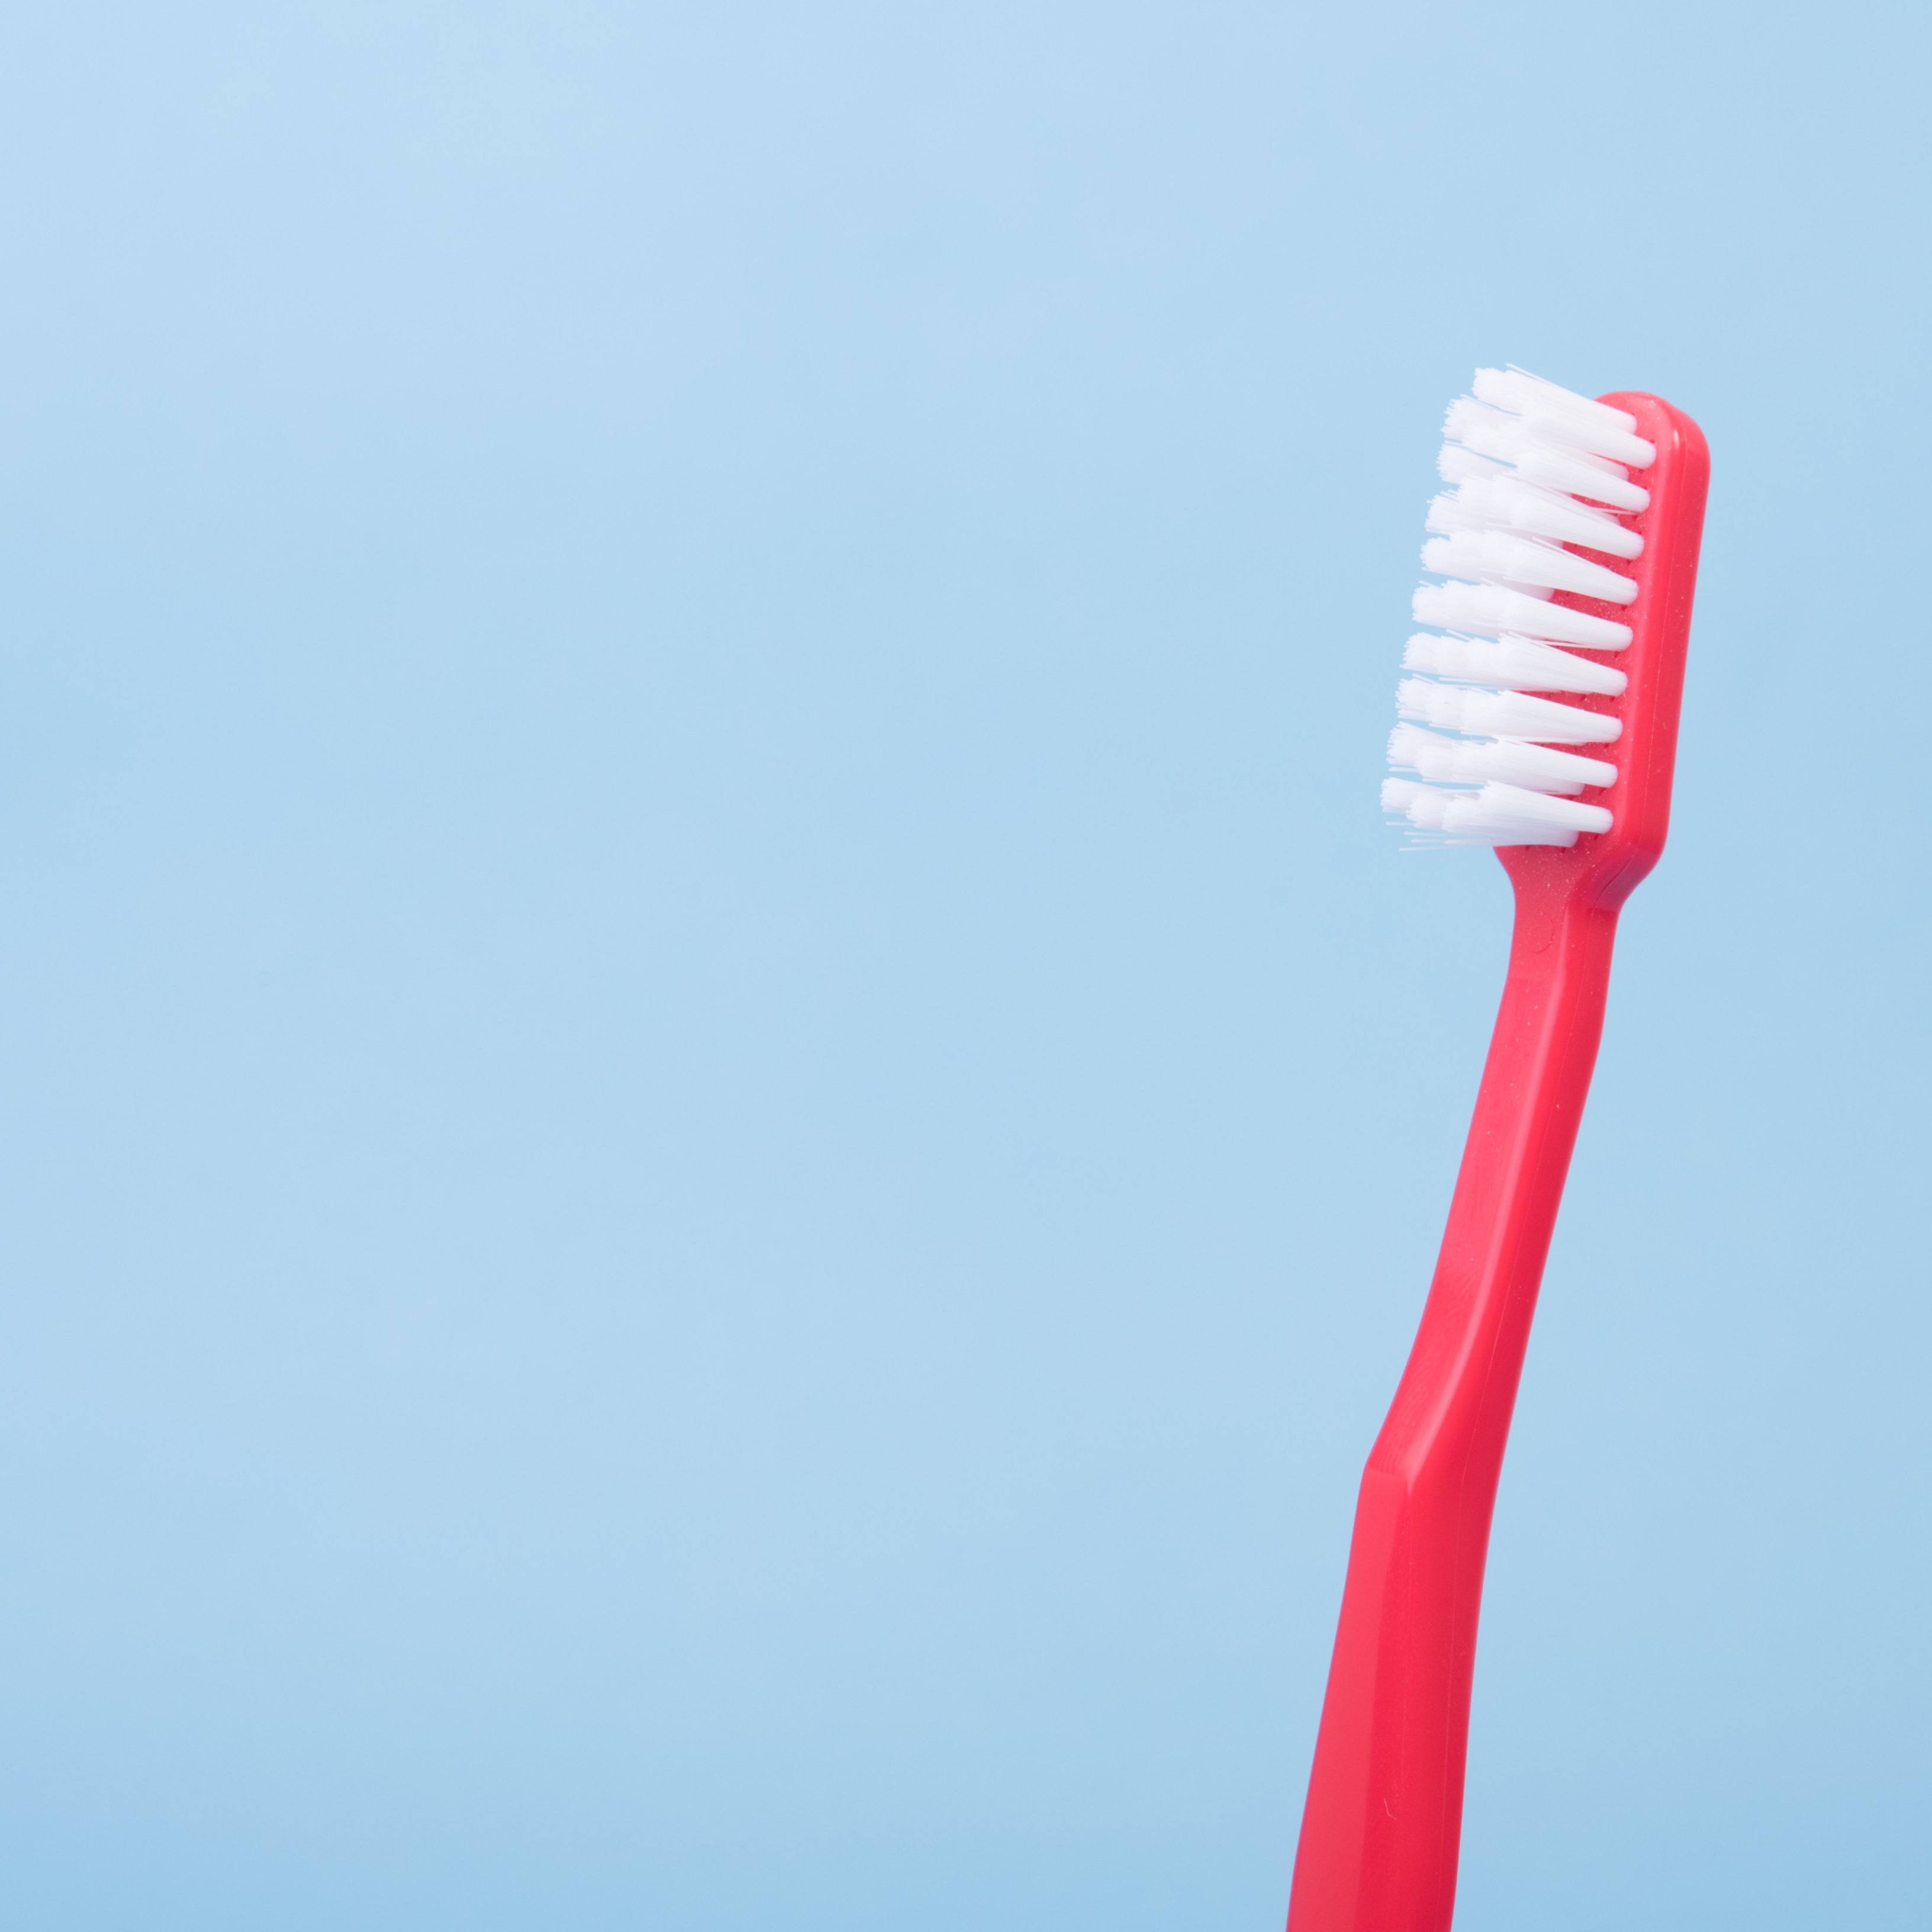 Cómo limpiarse bien los dientes y evitar posibles enfermedades